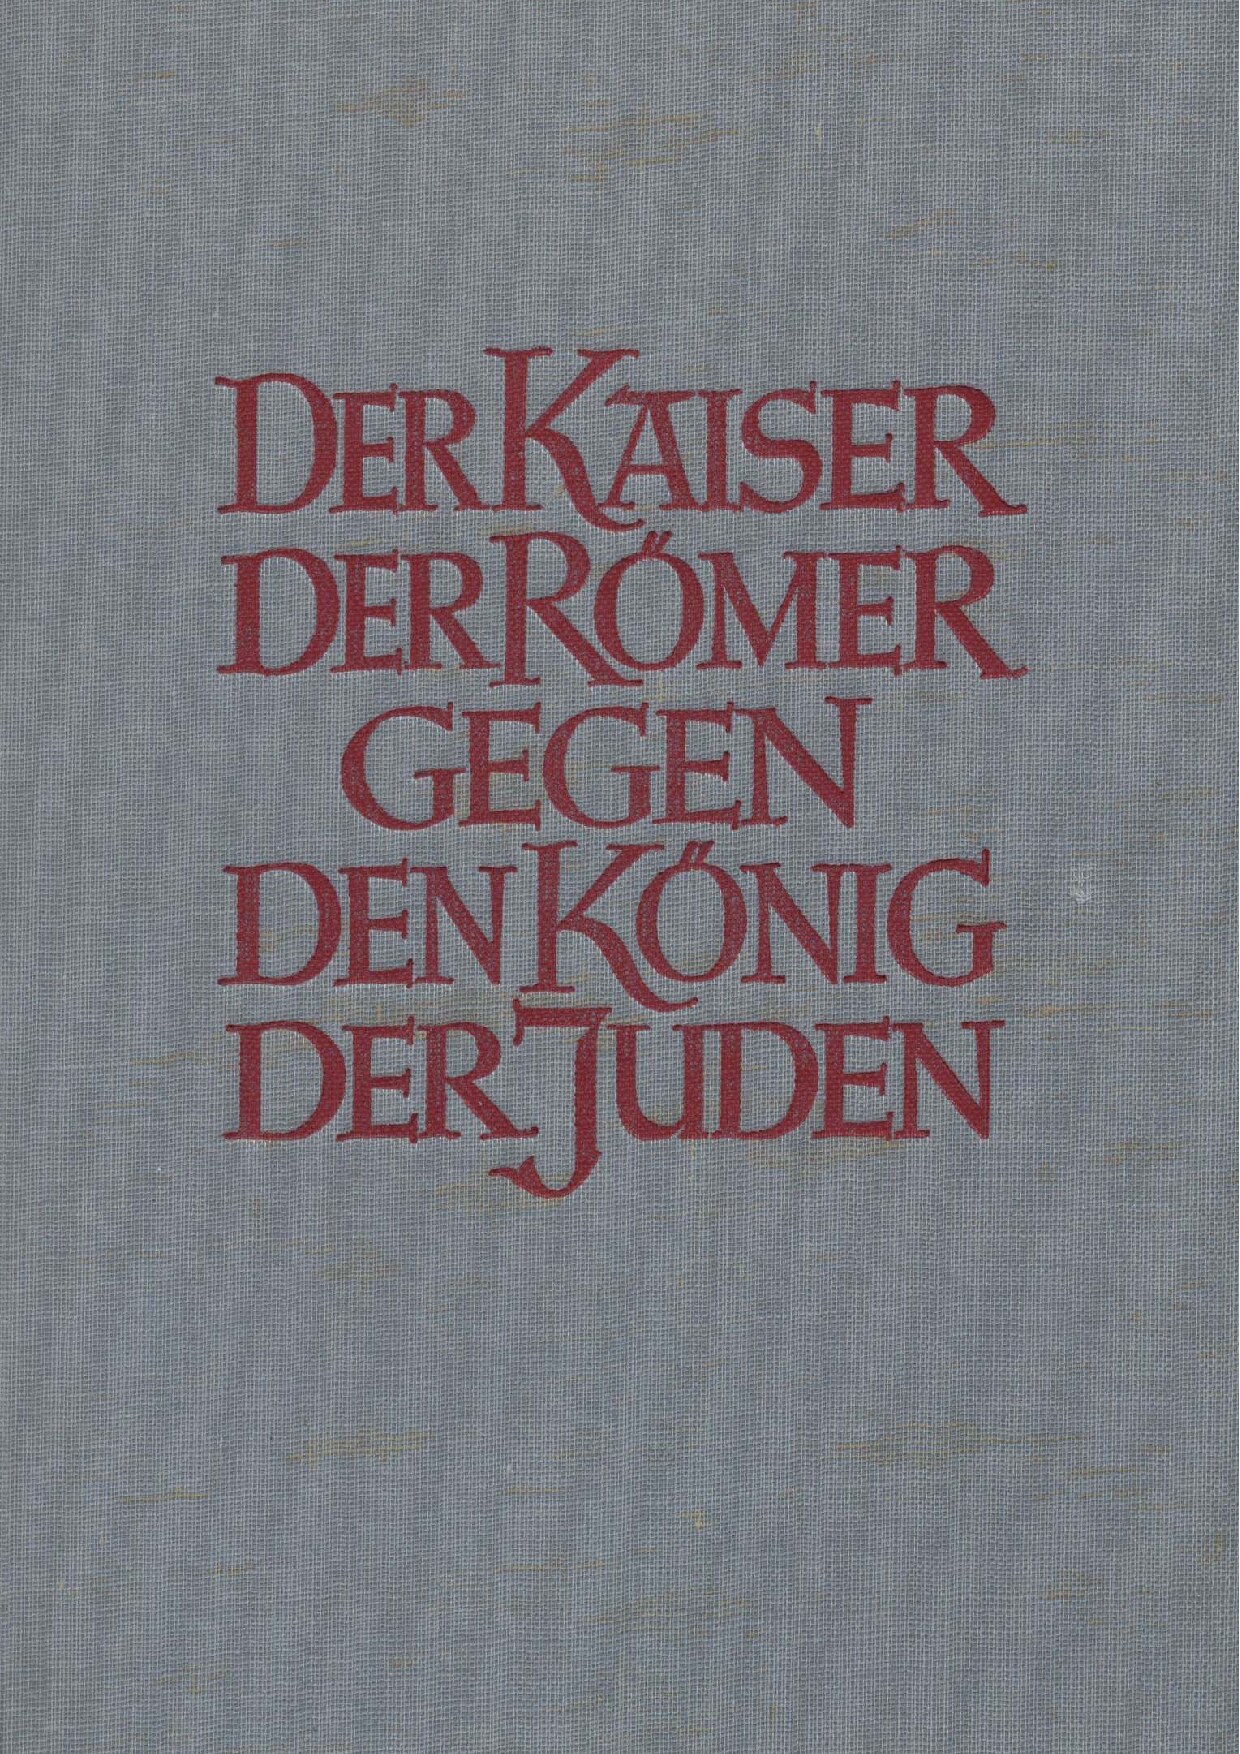 Der Kaiser der Römer gegen den König der Juden (1941, 65 S., Scan)